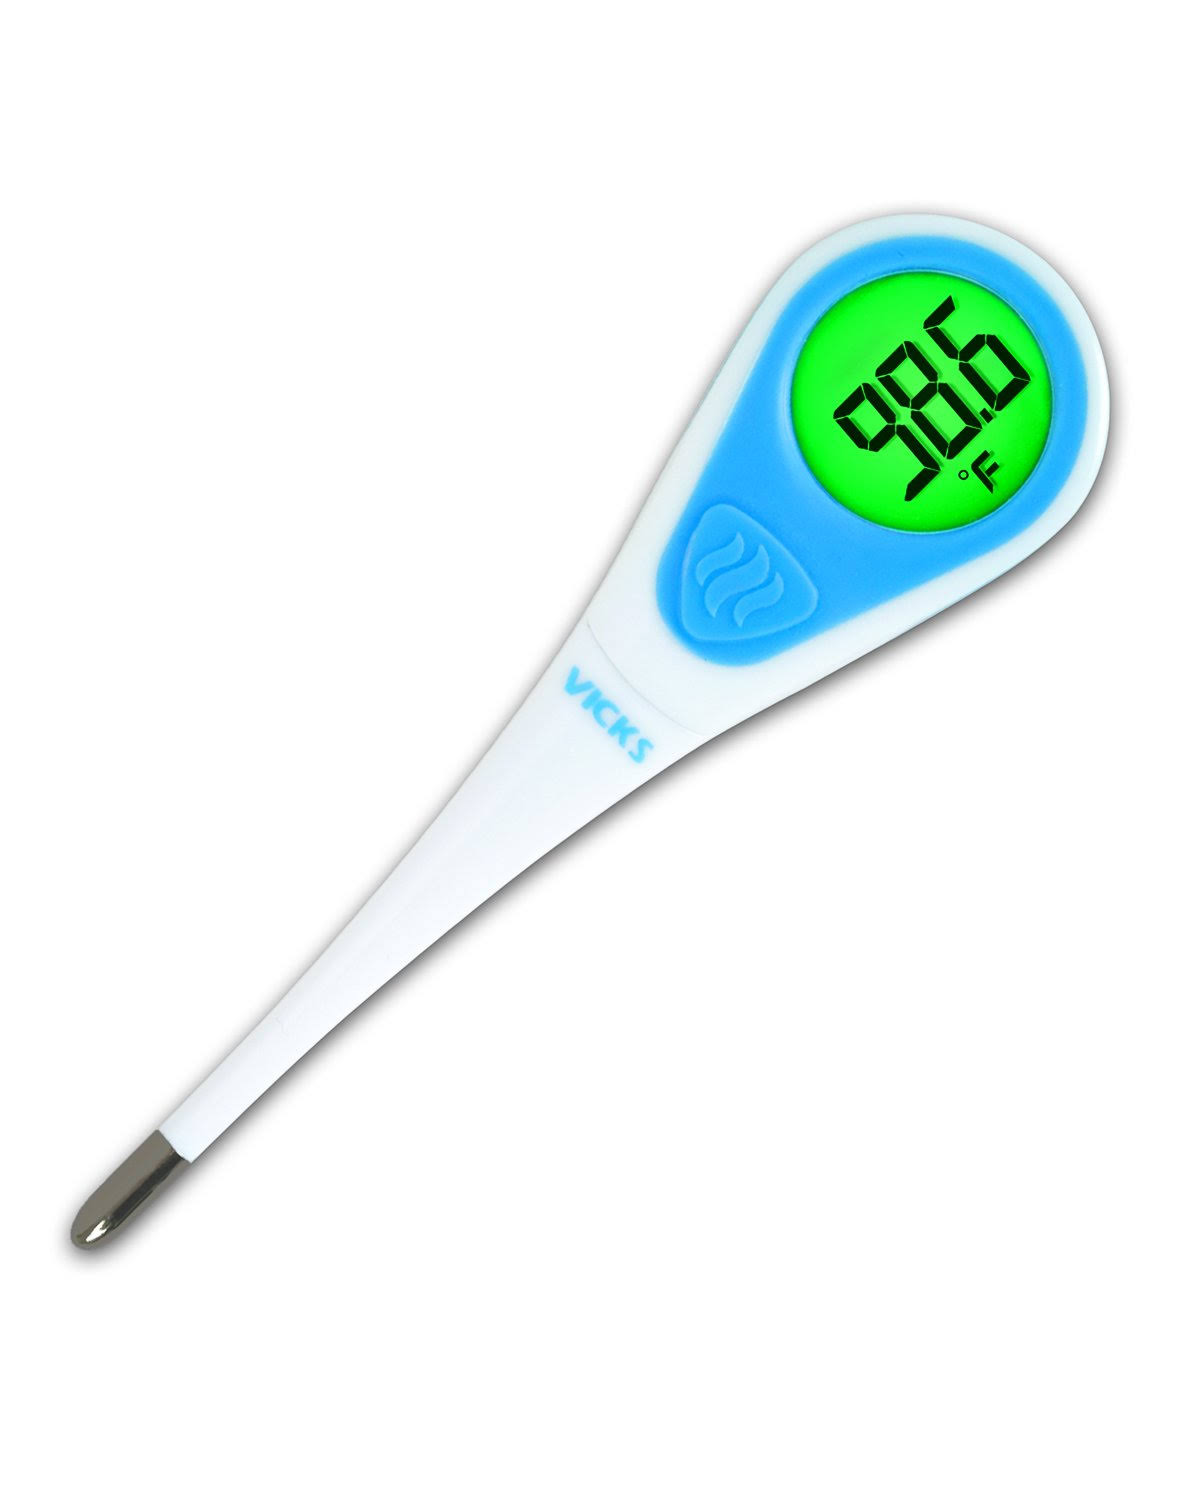 Vicks Speed Read Digital Thermometer V912US